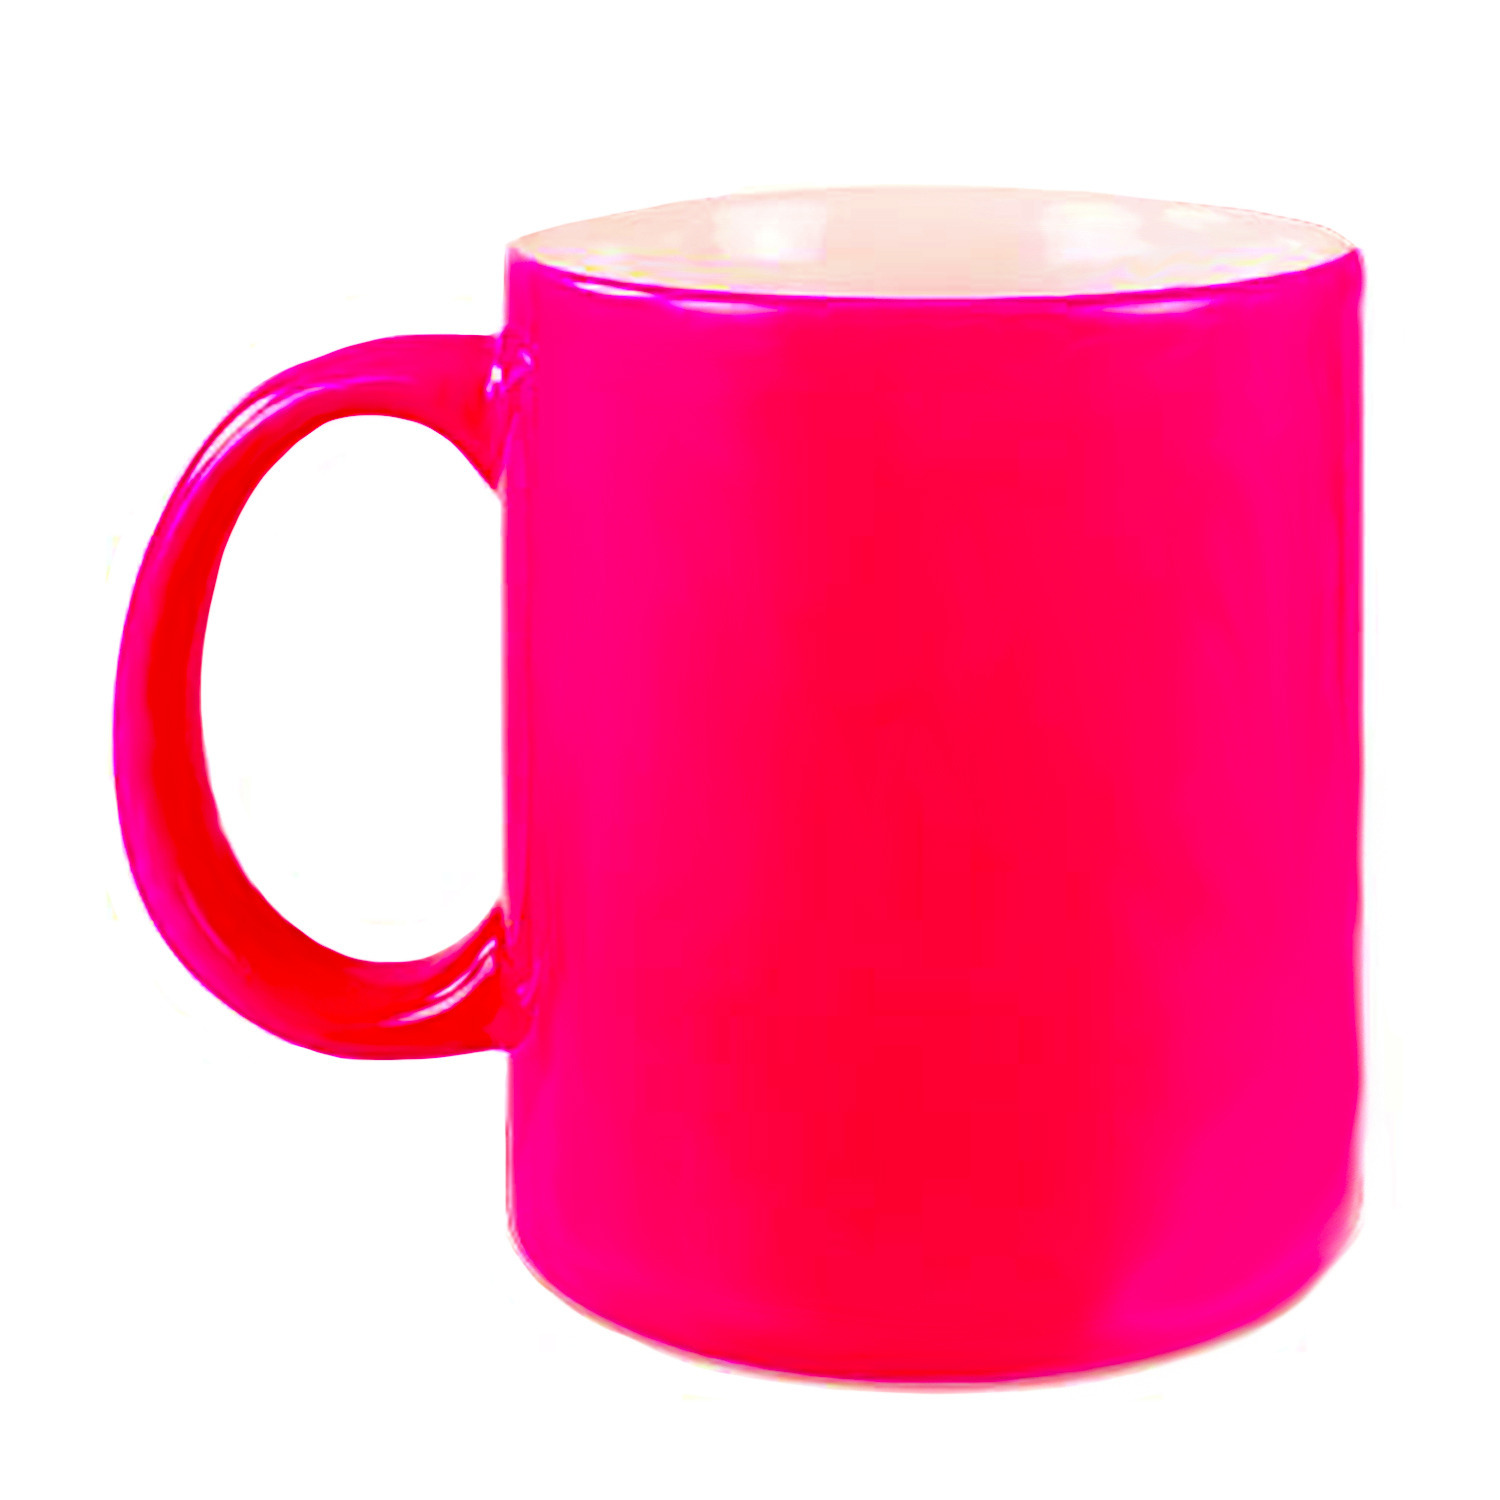 1x stuks neon roze bekers- koffiemokken 330 ml